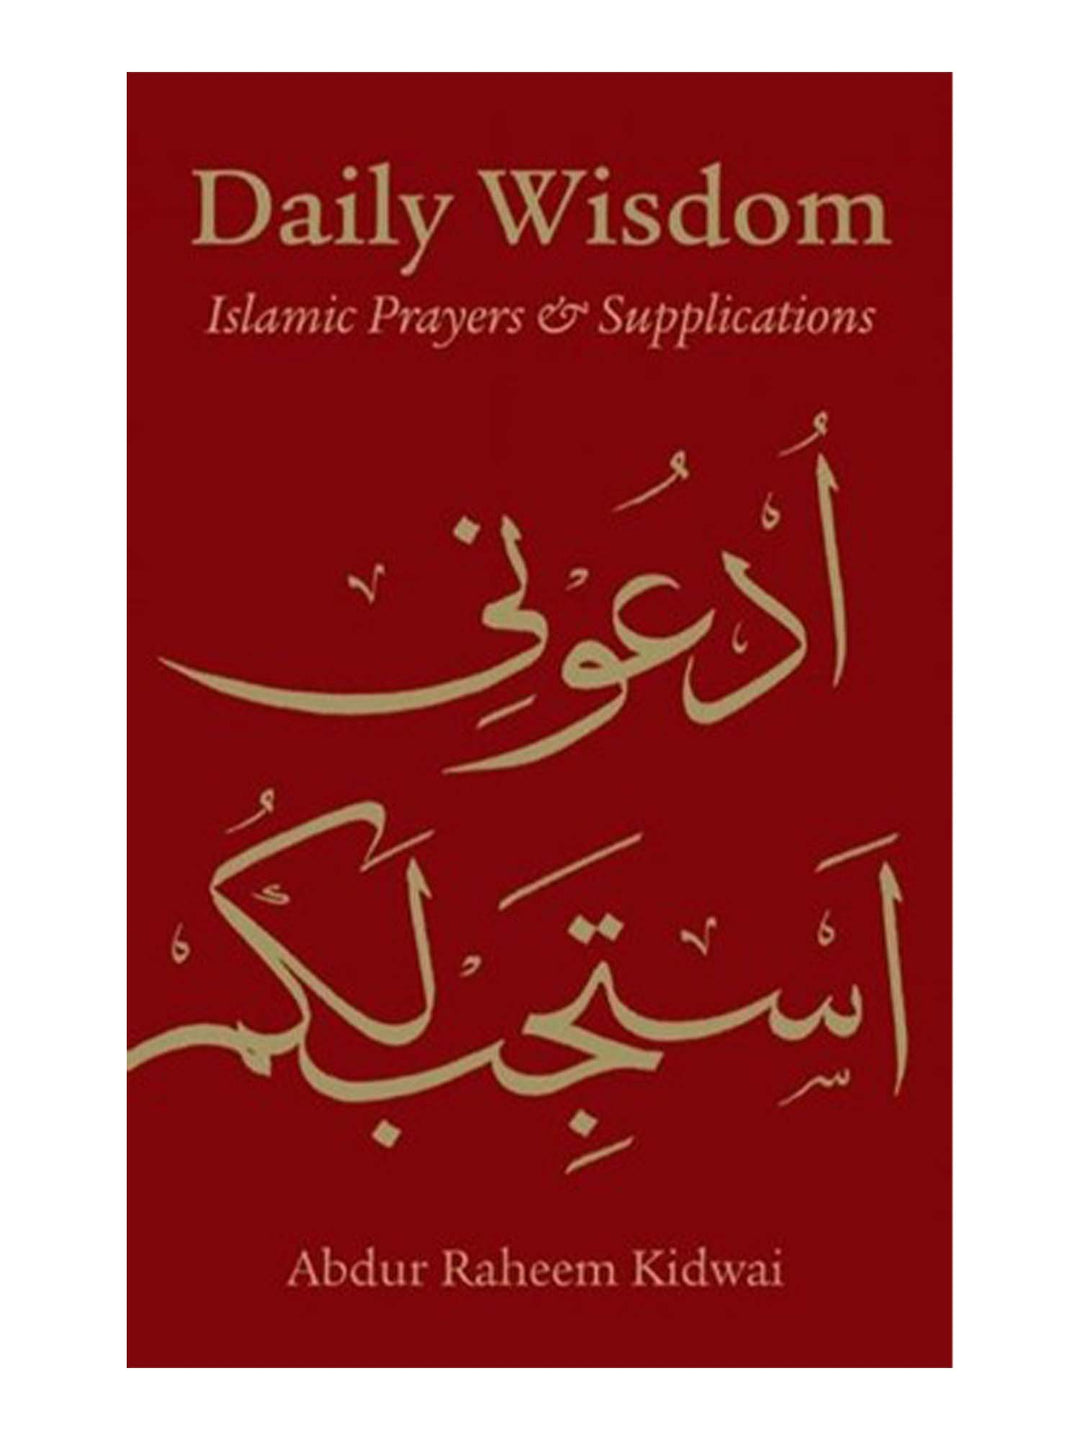 الحكمة اليومية - أدعية وأذكار إسلامية - عبد الرحيم كيدواي (غلاف مقوى)